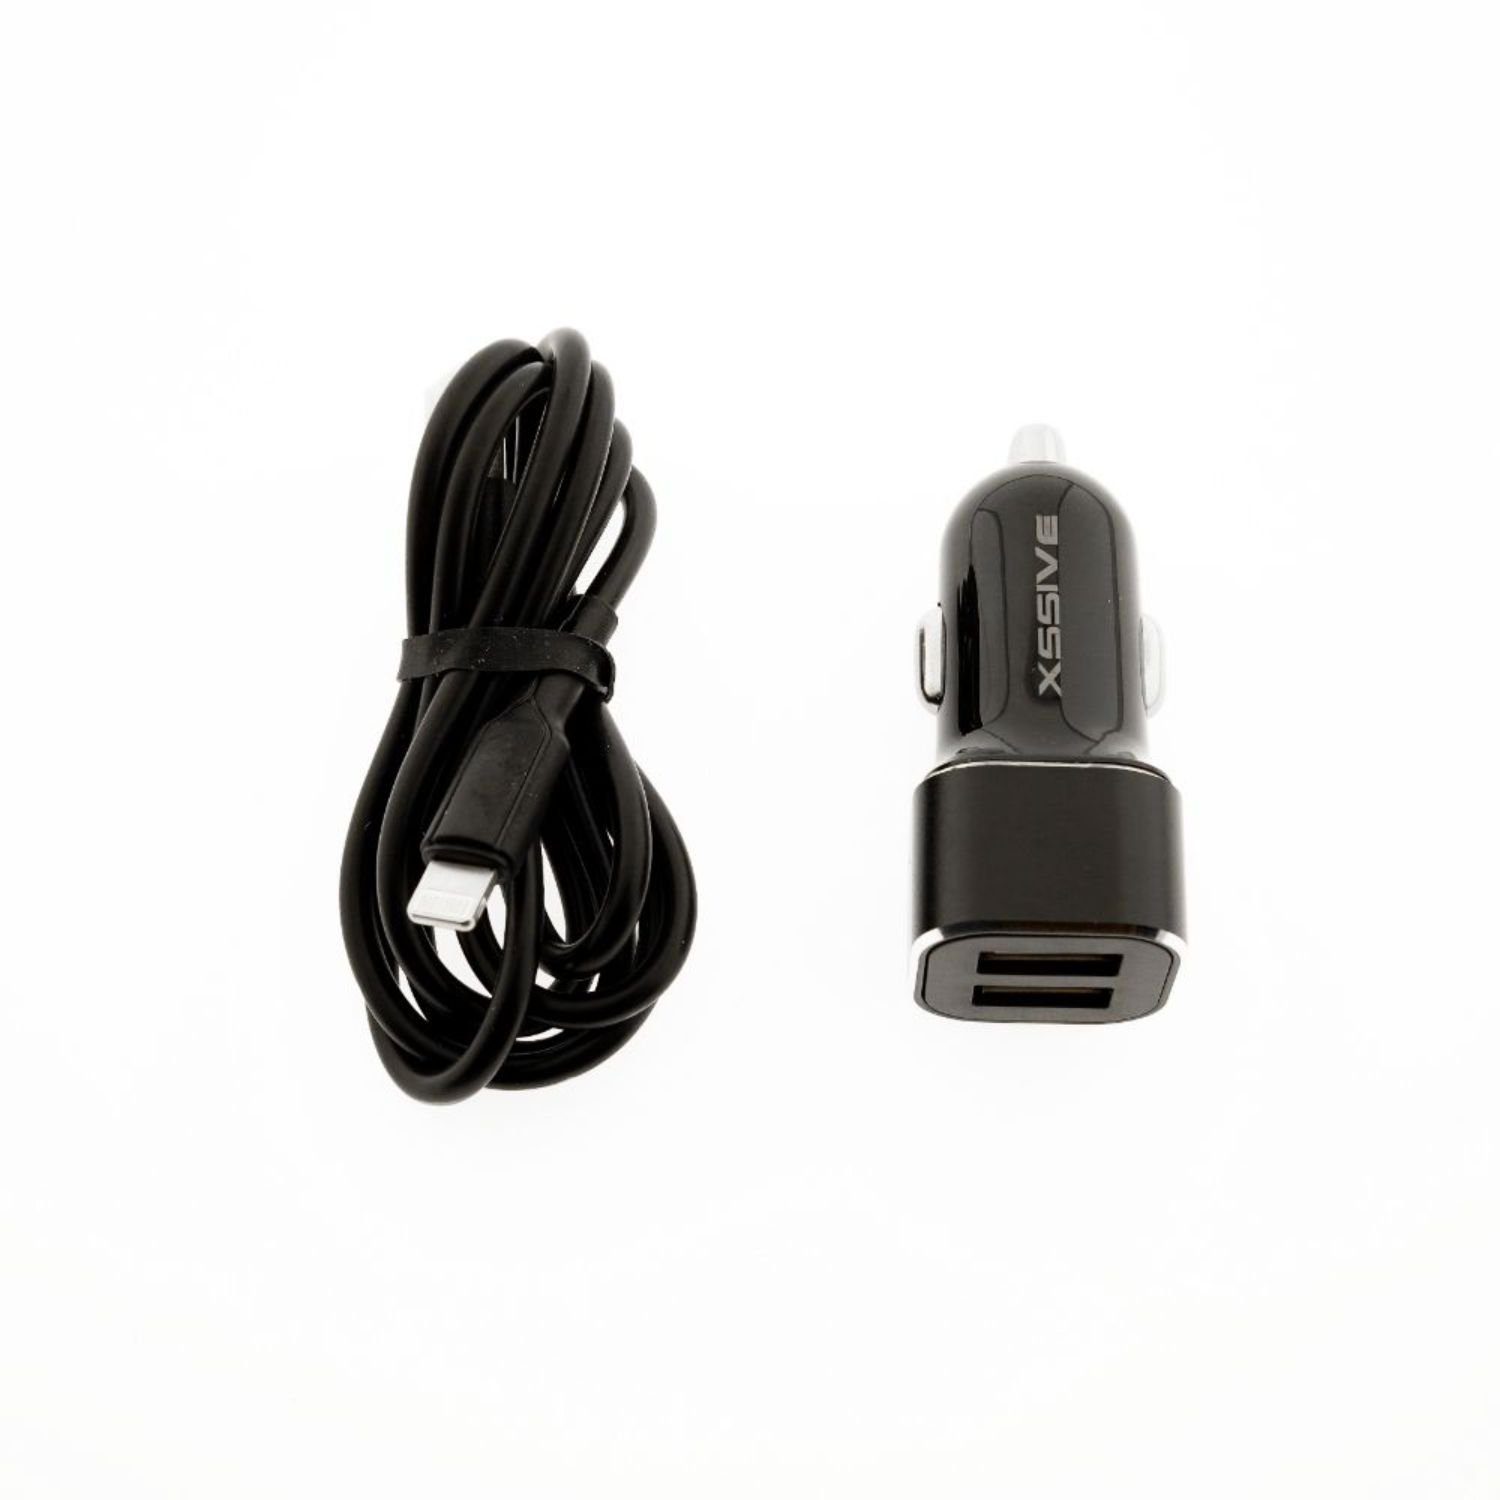 COFI 1453 Dual Kfz Autoladegerät Zigarettenzünder USB Kabel für iOS 2.4A 1m  USB-Ladegerät